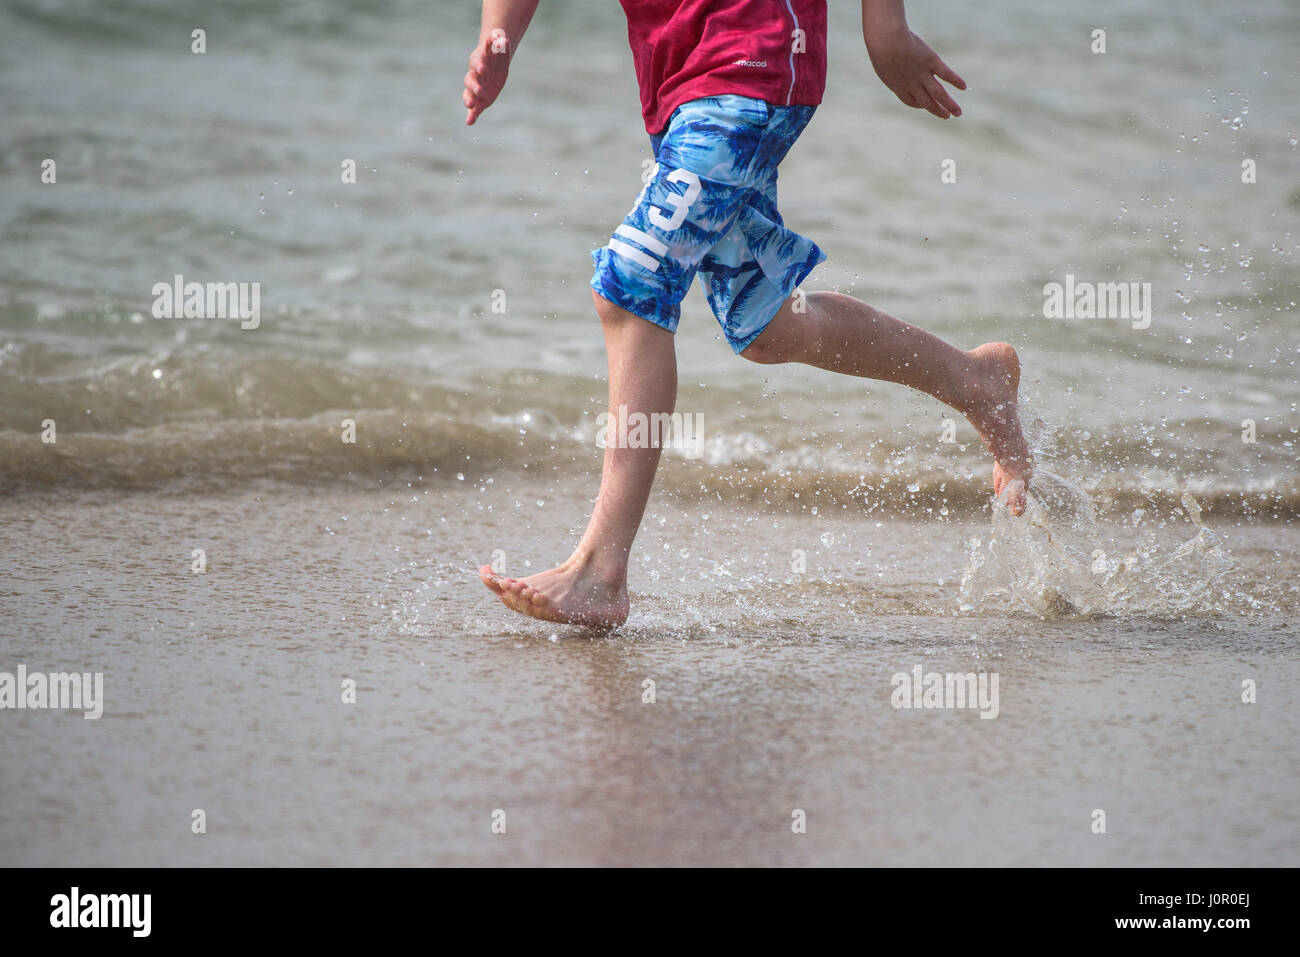 Fistral Newquay personne courant le long du rivage Splash Runner Splash Splash Splash Spray Eau Barefoot énergie Energétique bord de mer Tourisme vacances sur la plage Banque D'Images